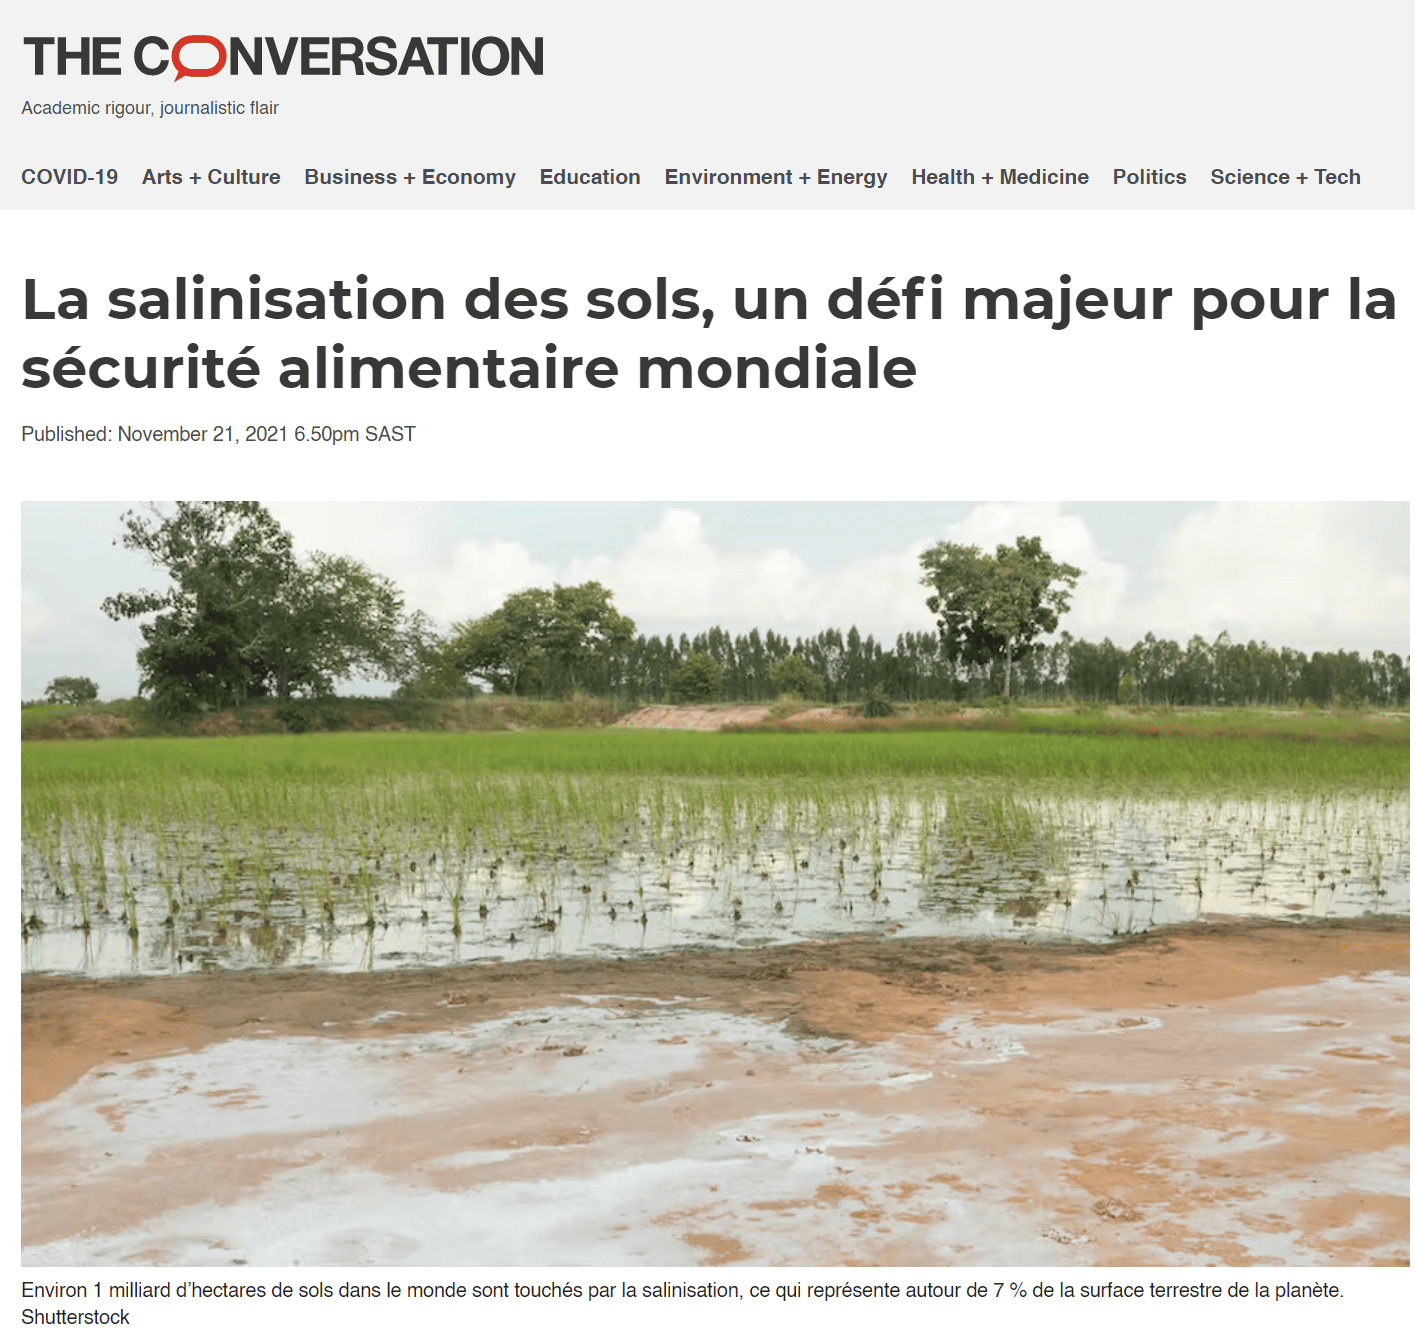 La salinisation des sols, un défi majeur pour la sécurité alimentaire mondiale, article à lire sur The Conversation.